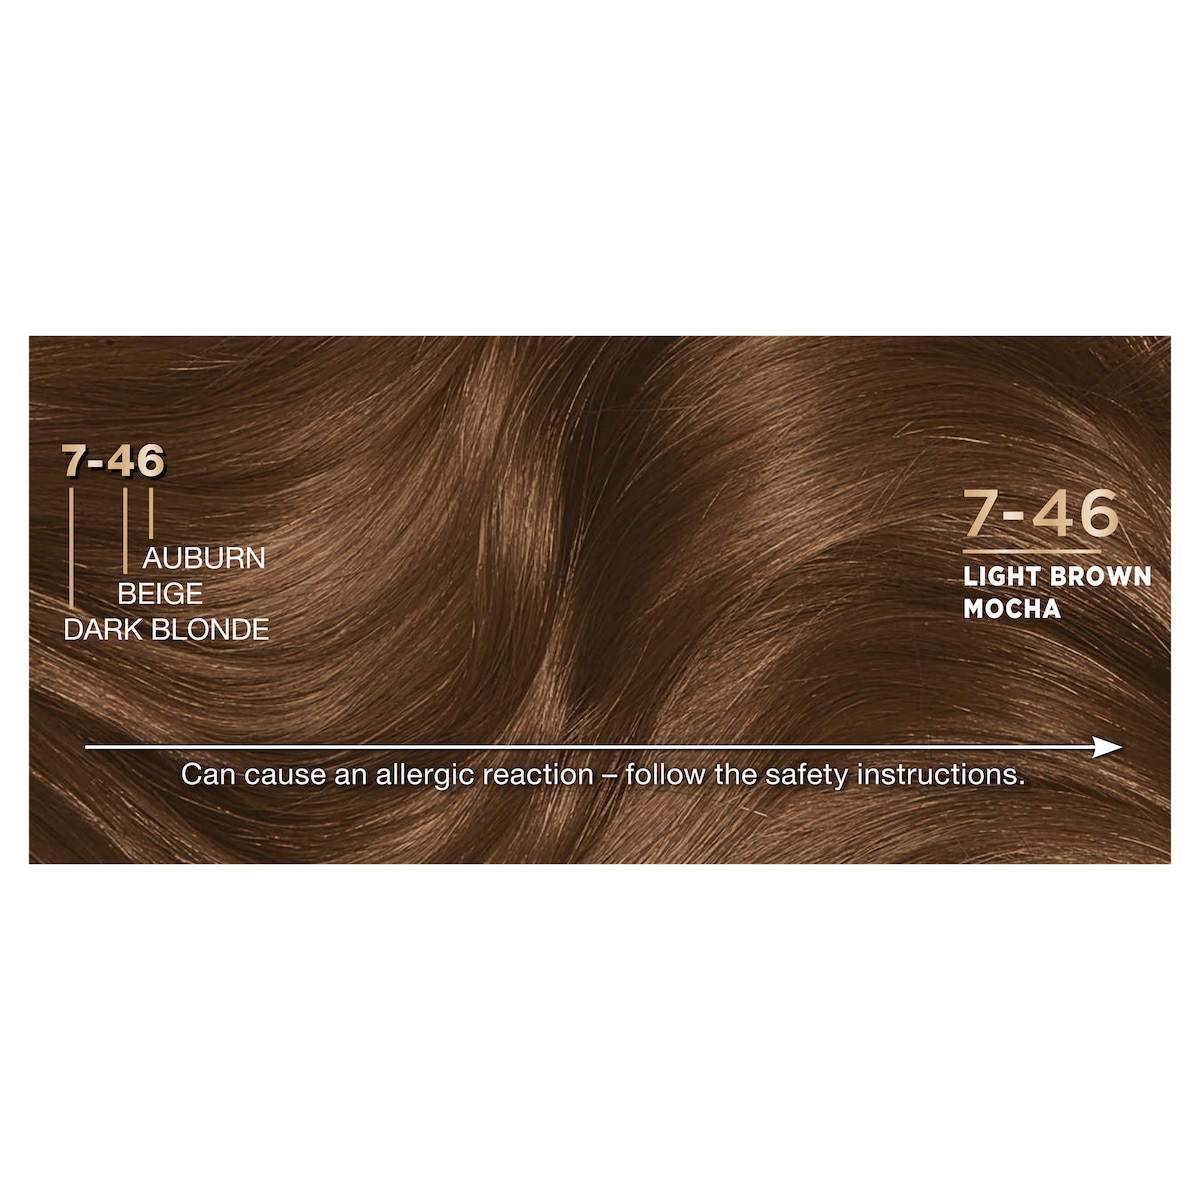 Napro Palette Hair Colour 7.46 Light Brown Mocha by Schwarzkopf